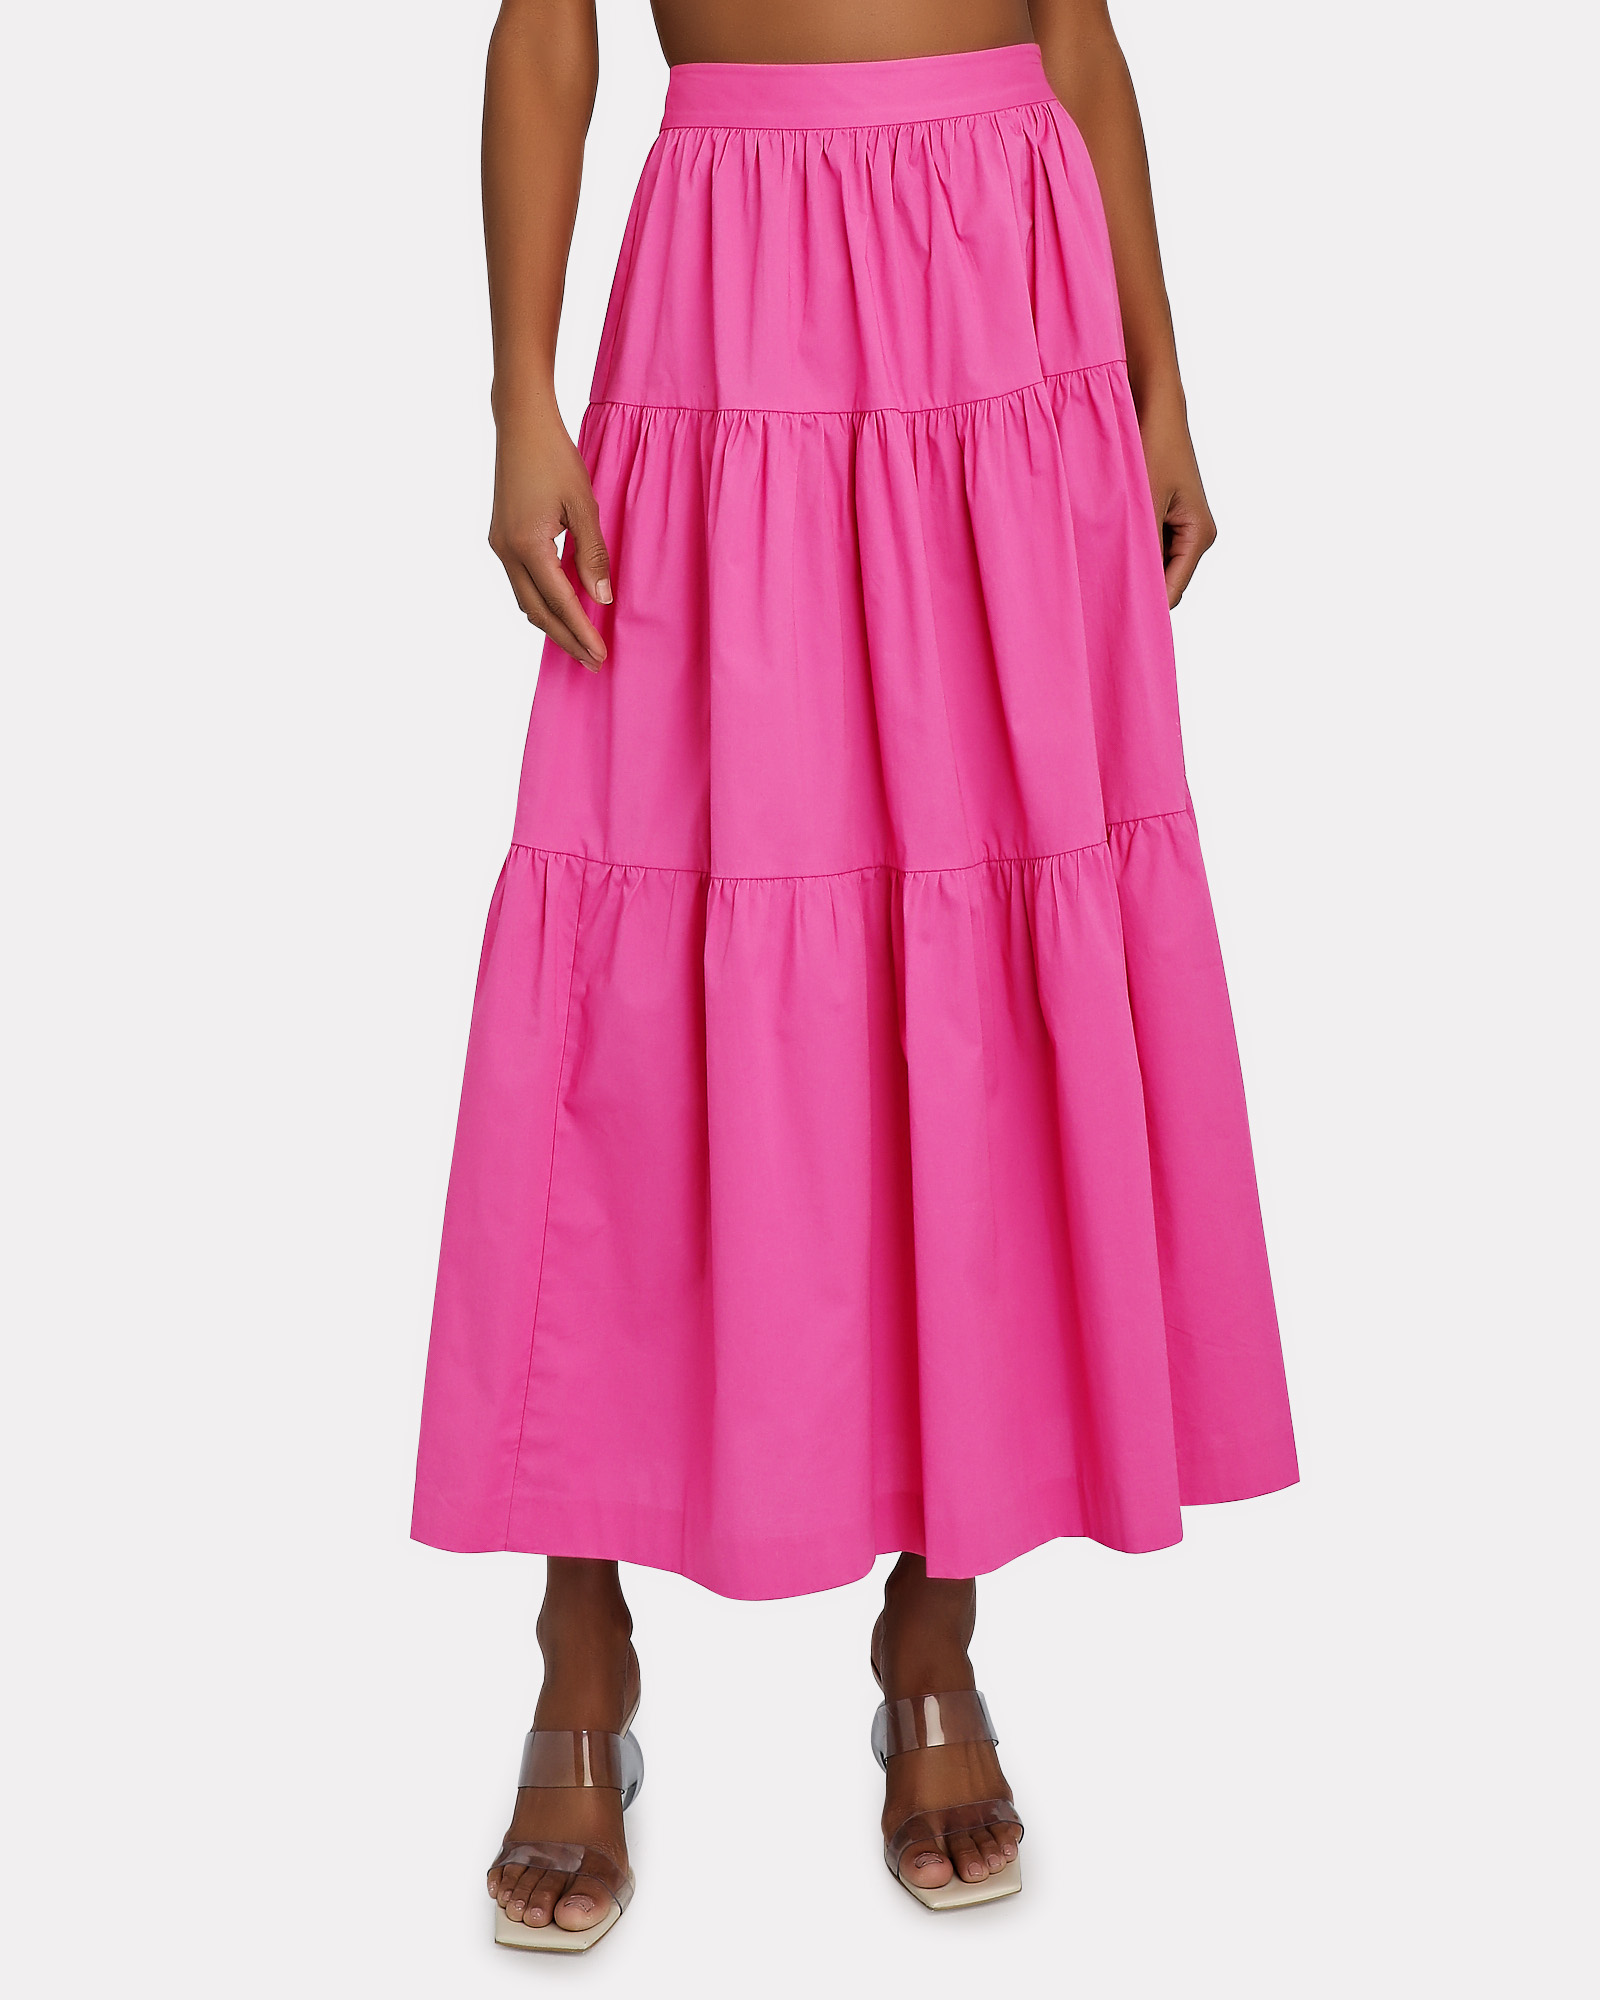 STAUD Sea Tiered Poplin Midi Skirt in Pink | INTERMIX®